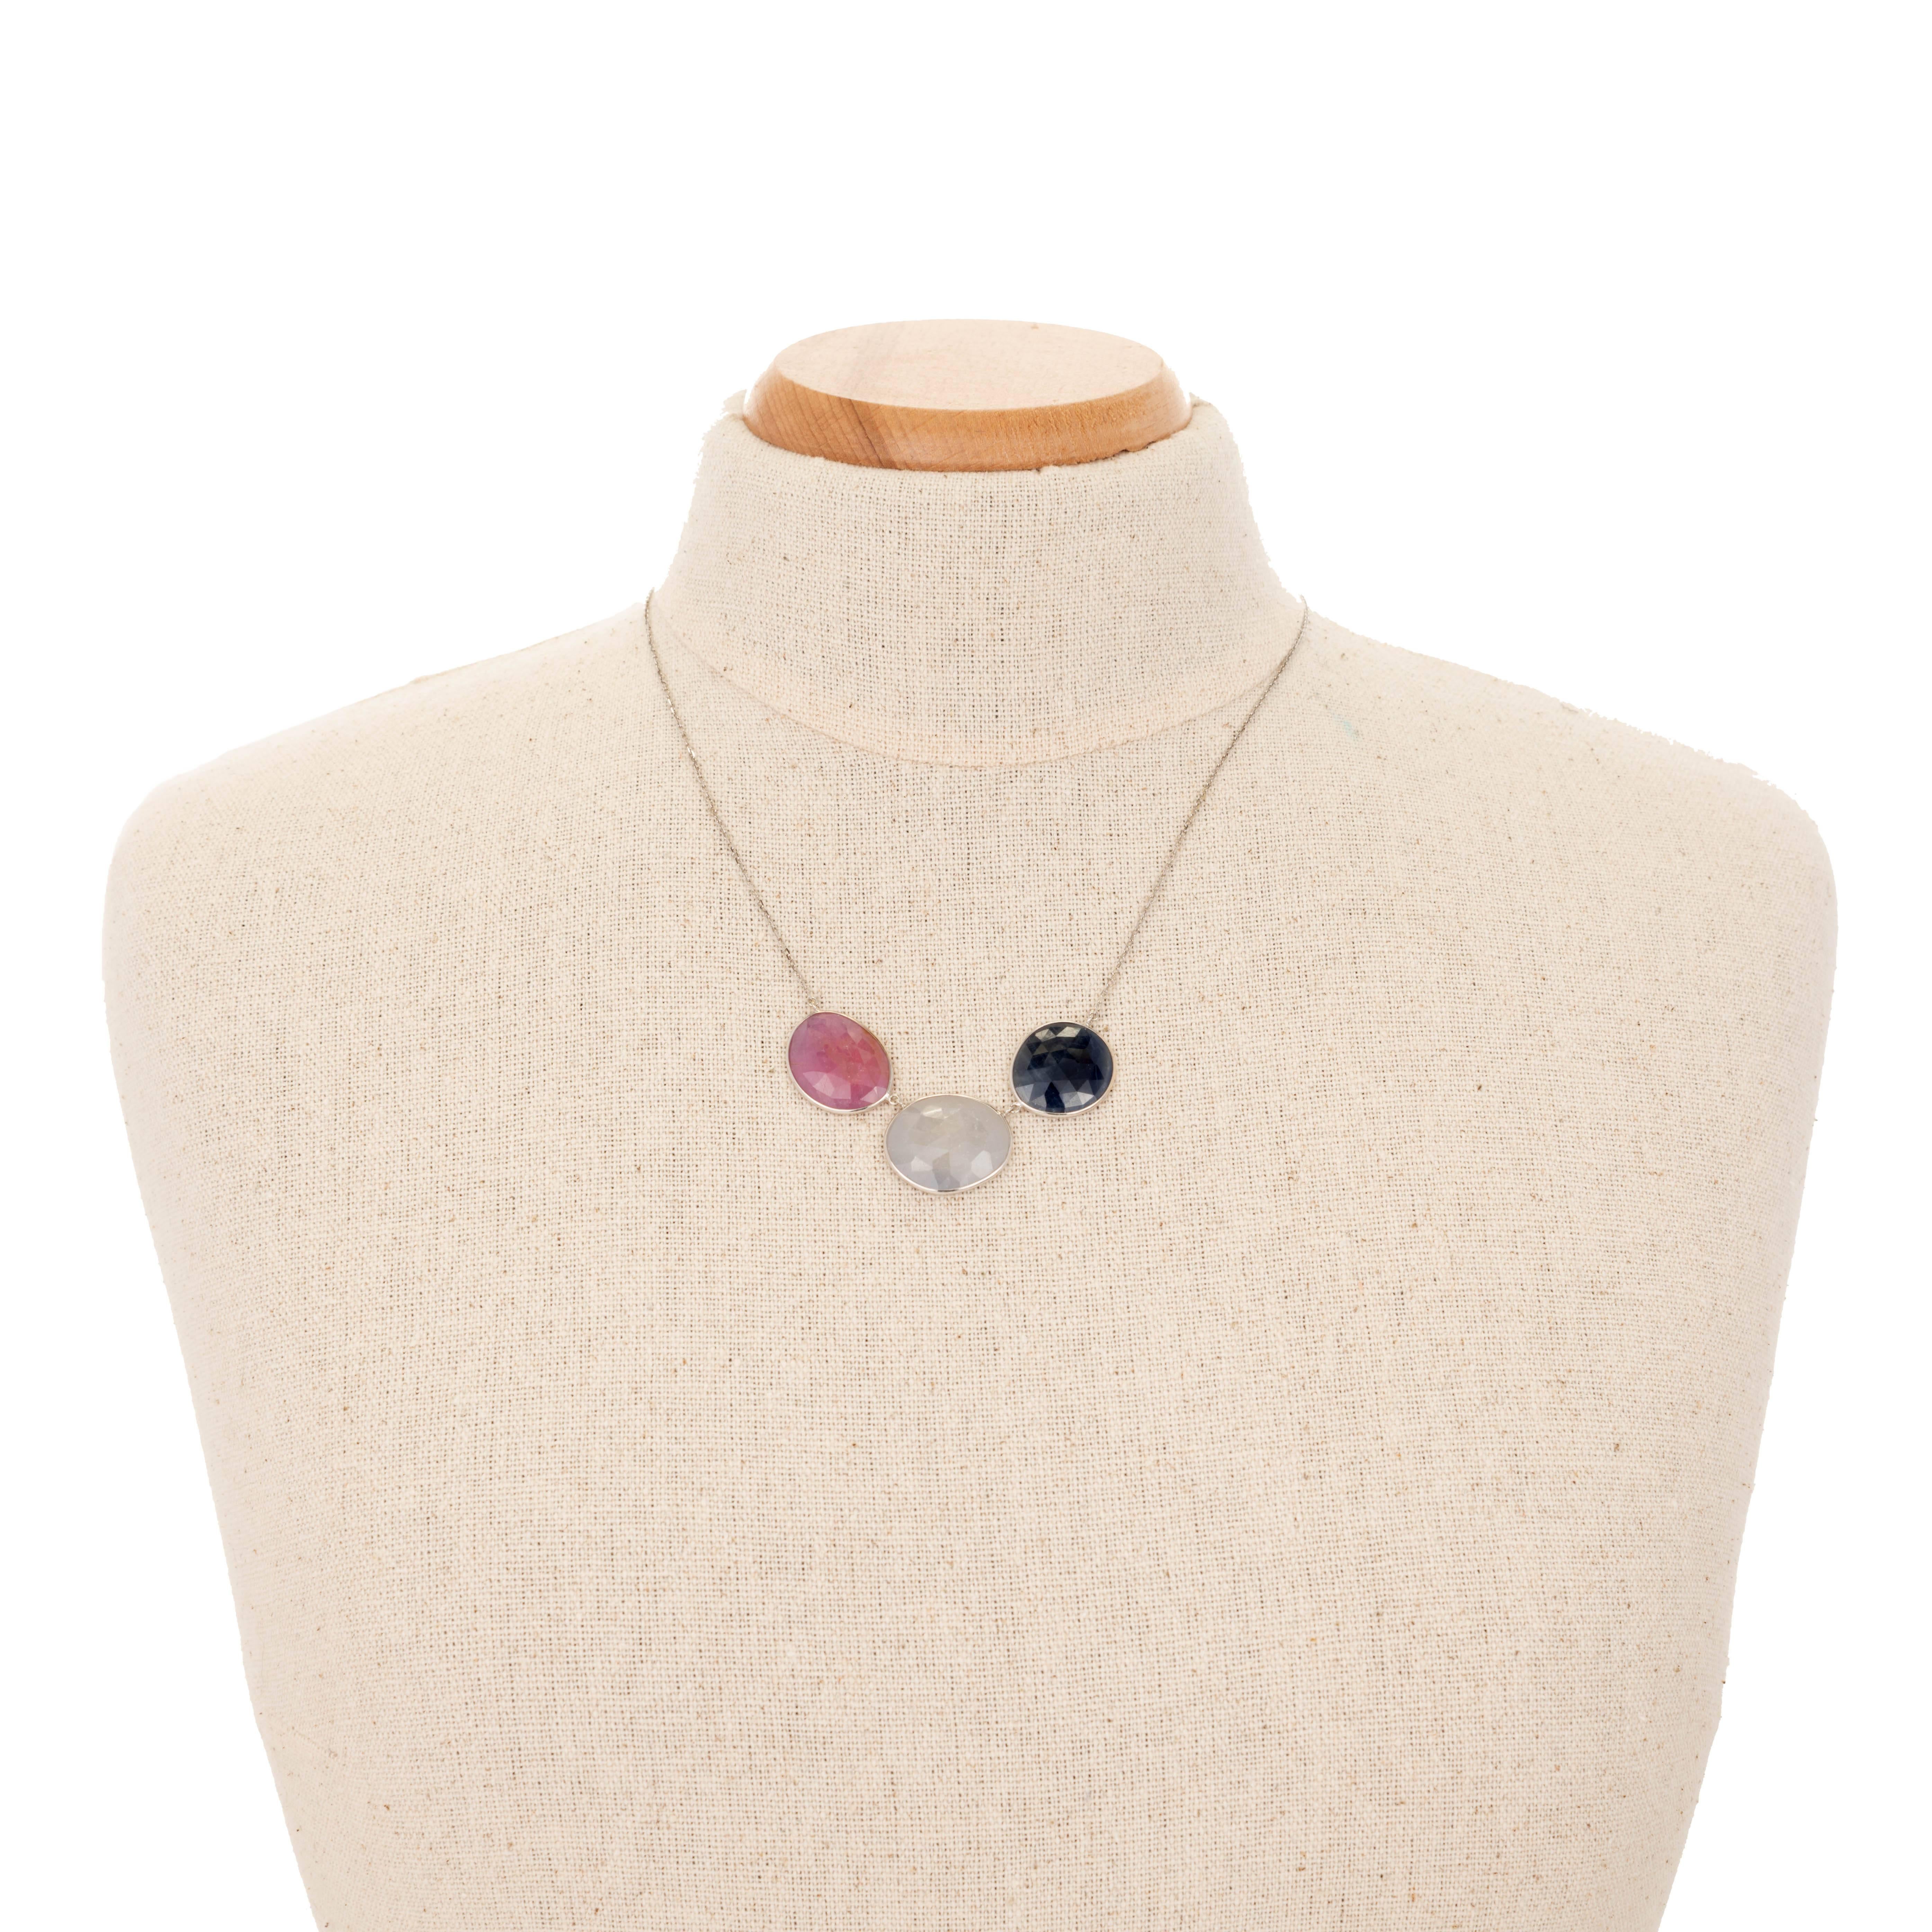 Women's 15.00 Carat Sapphire Rose Cut Slices Gold Necklace Pendant